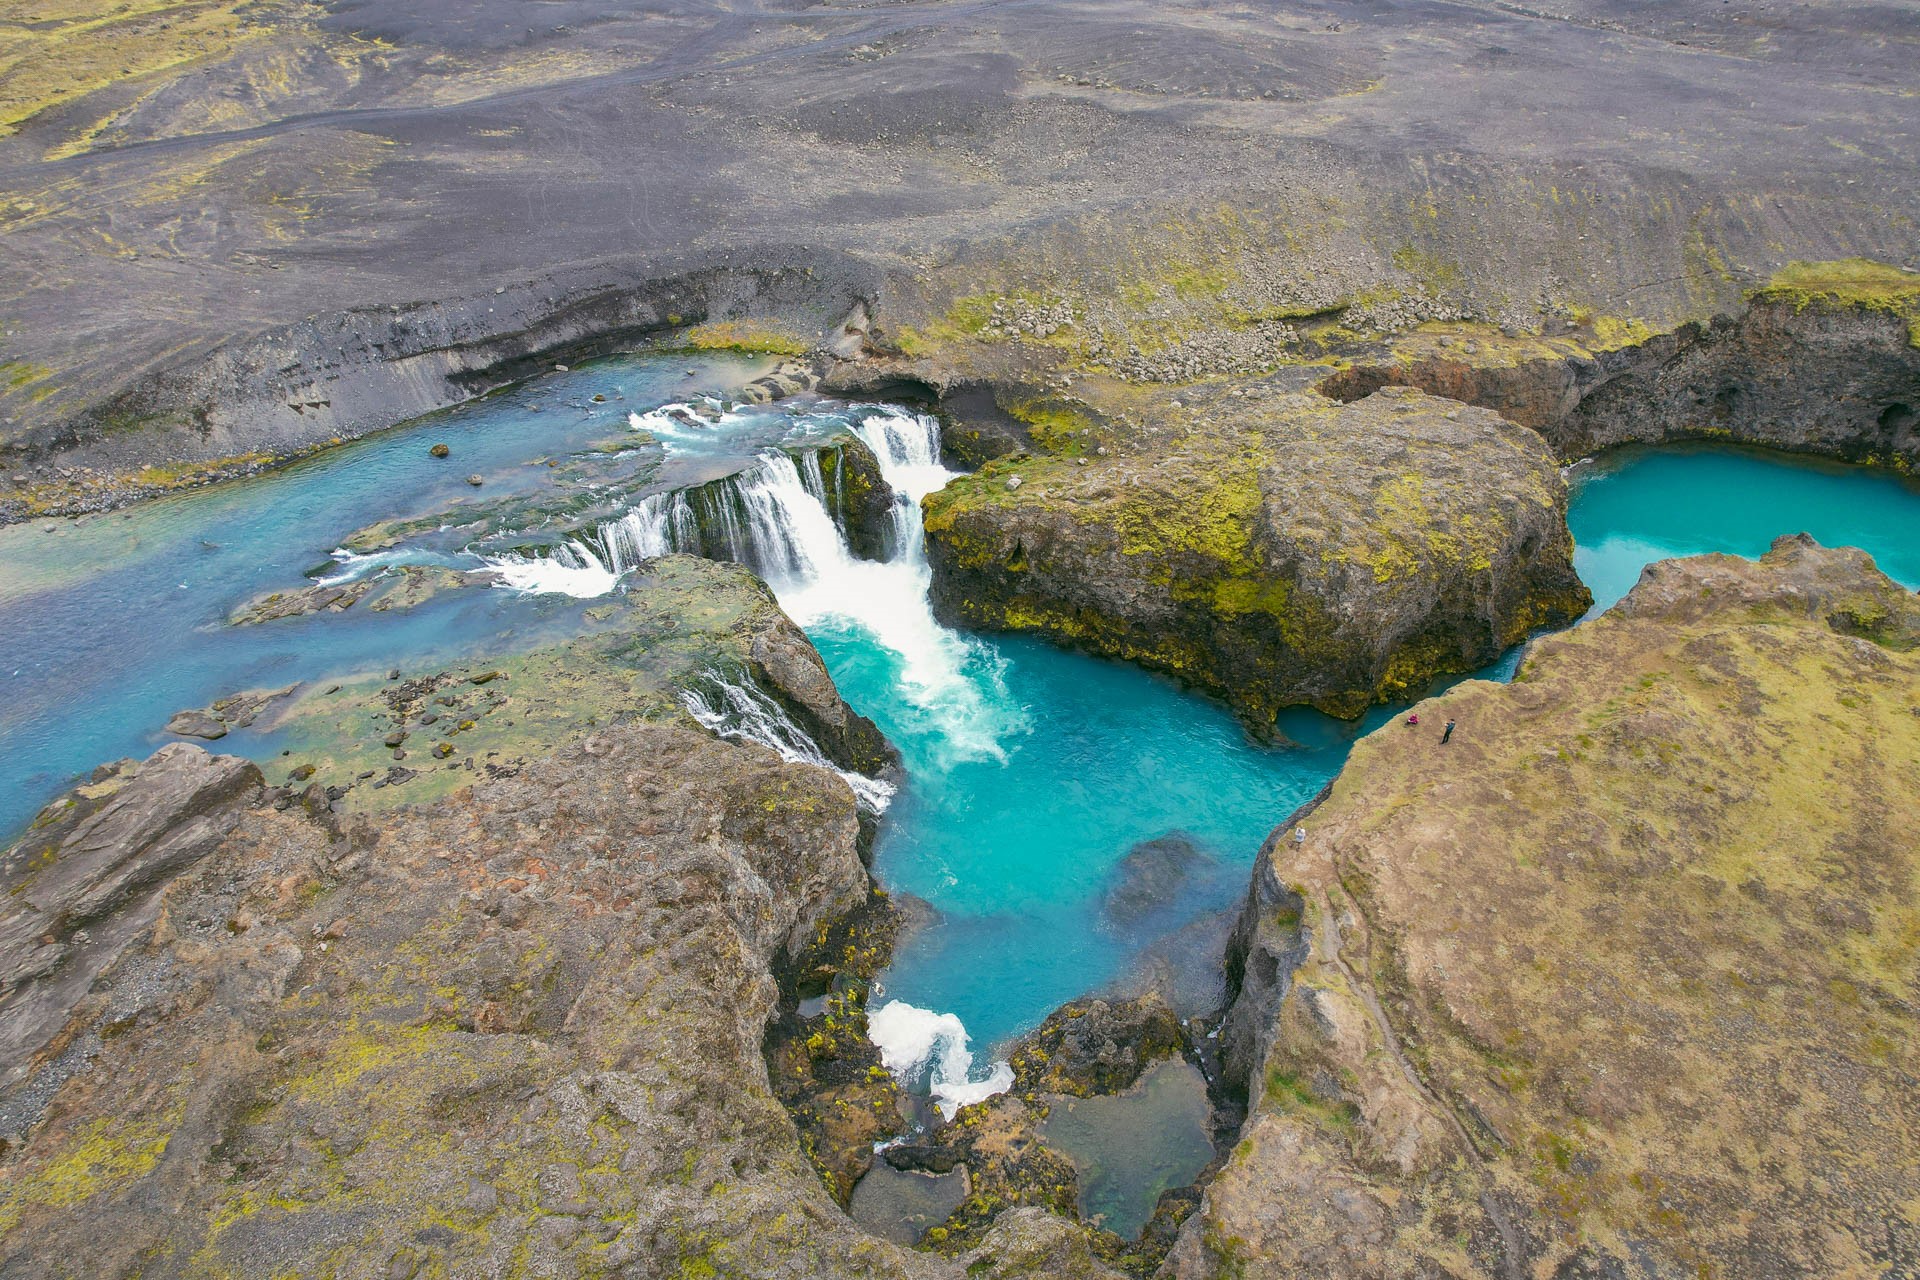 Wodospad w interiorze Islandii | Islandzkie wodospady